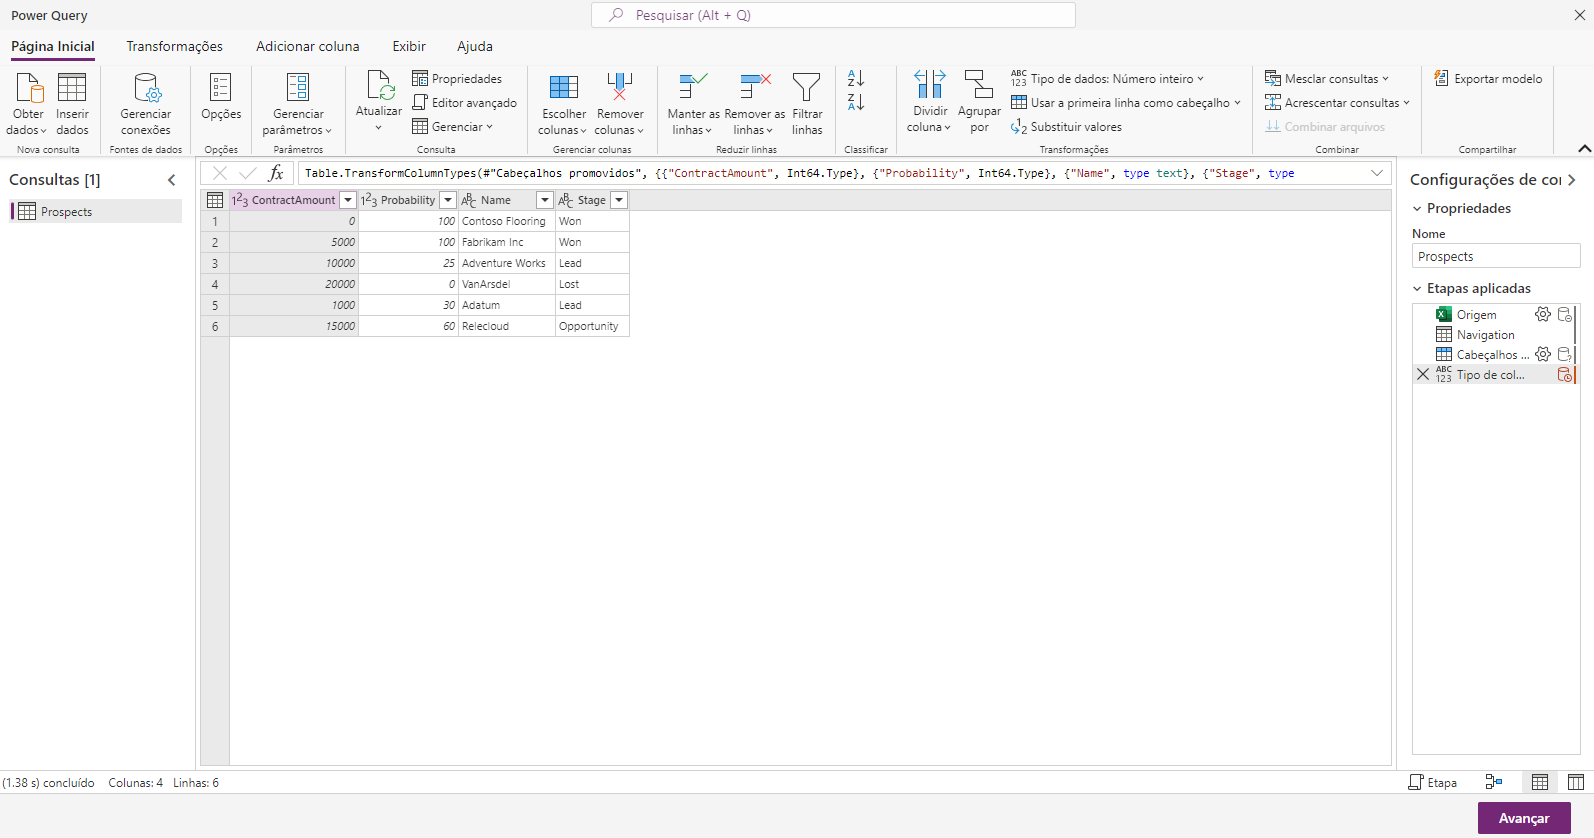 Captura de tela da janela do Power Query mostrando as opções de modelagem de dados.